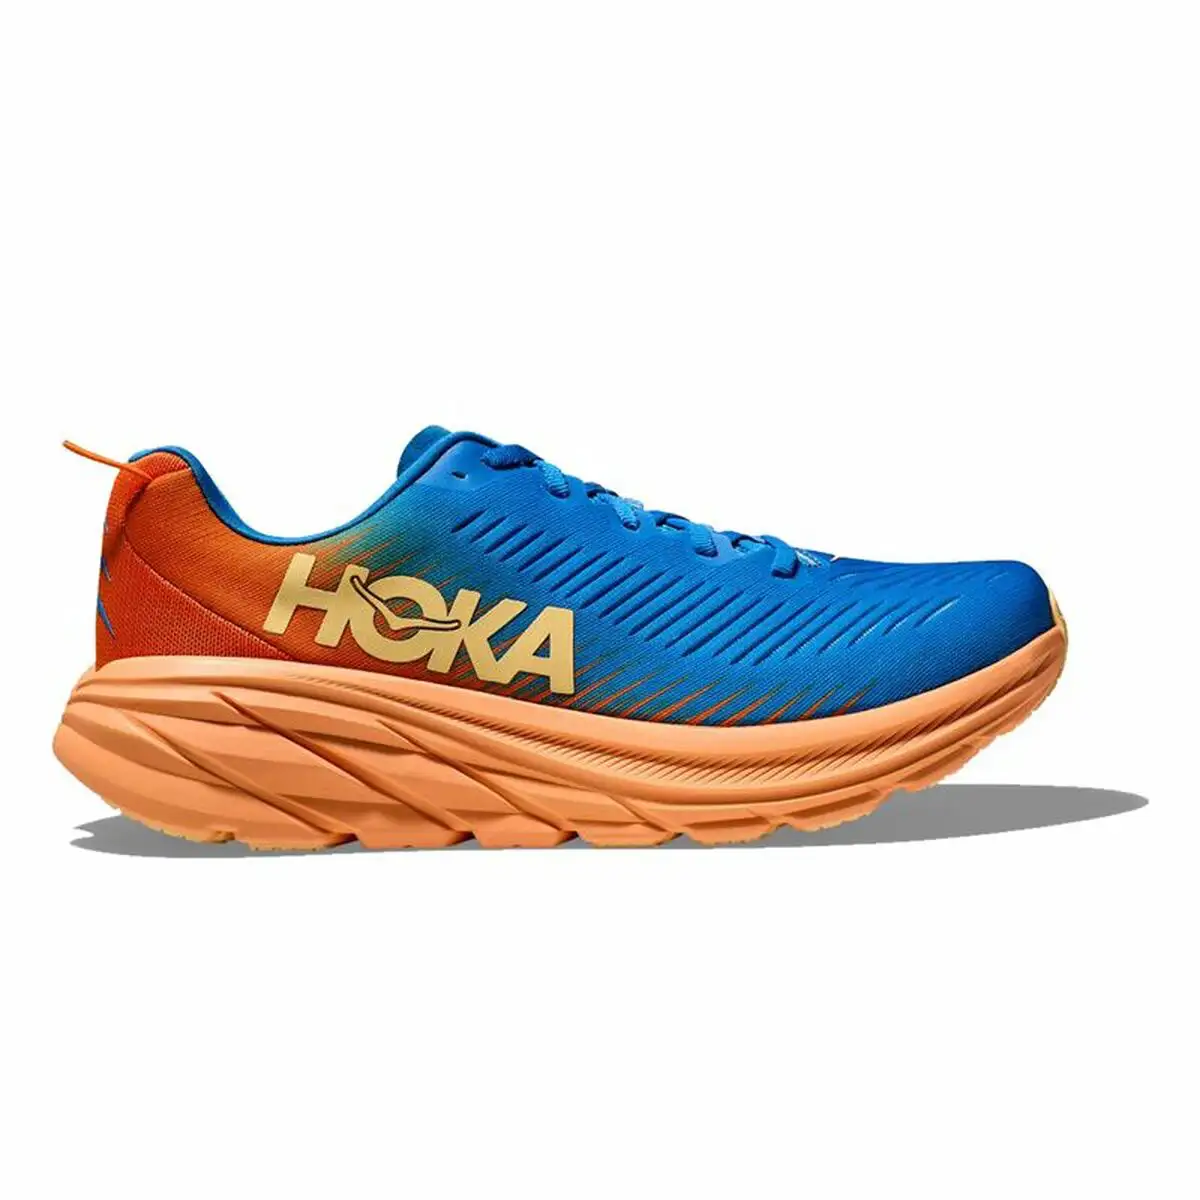 Chaussures de running pour adultes hoka rincon 3 bleu homme_8047. DIAYTAR SENEGAL - Votre Destination Shopping Exquise. Explorez notre boutique en ligne et découvrez des trésors qui ajoutent une touche de sophistication à votre style et à votre espace.